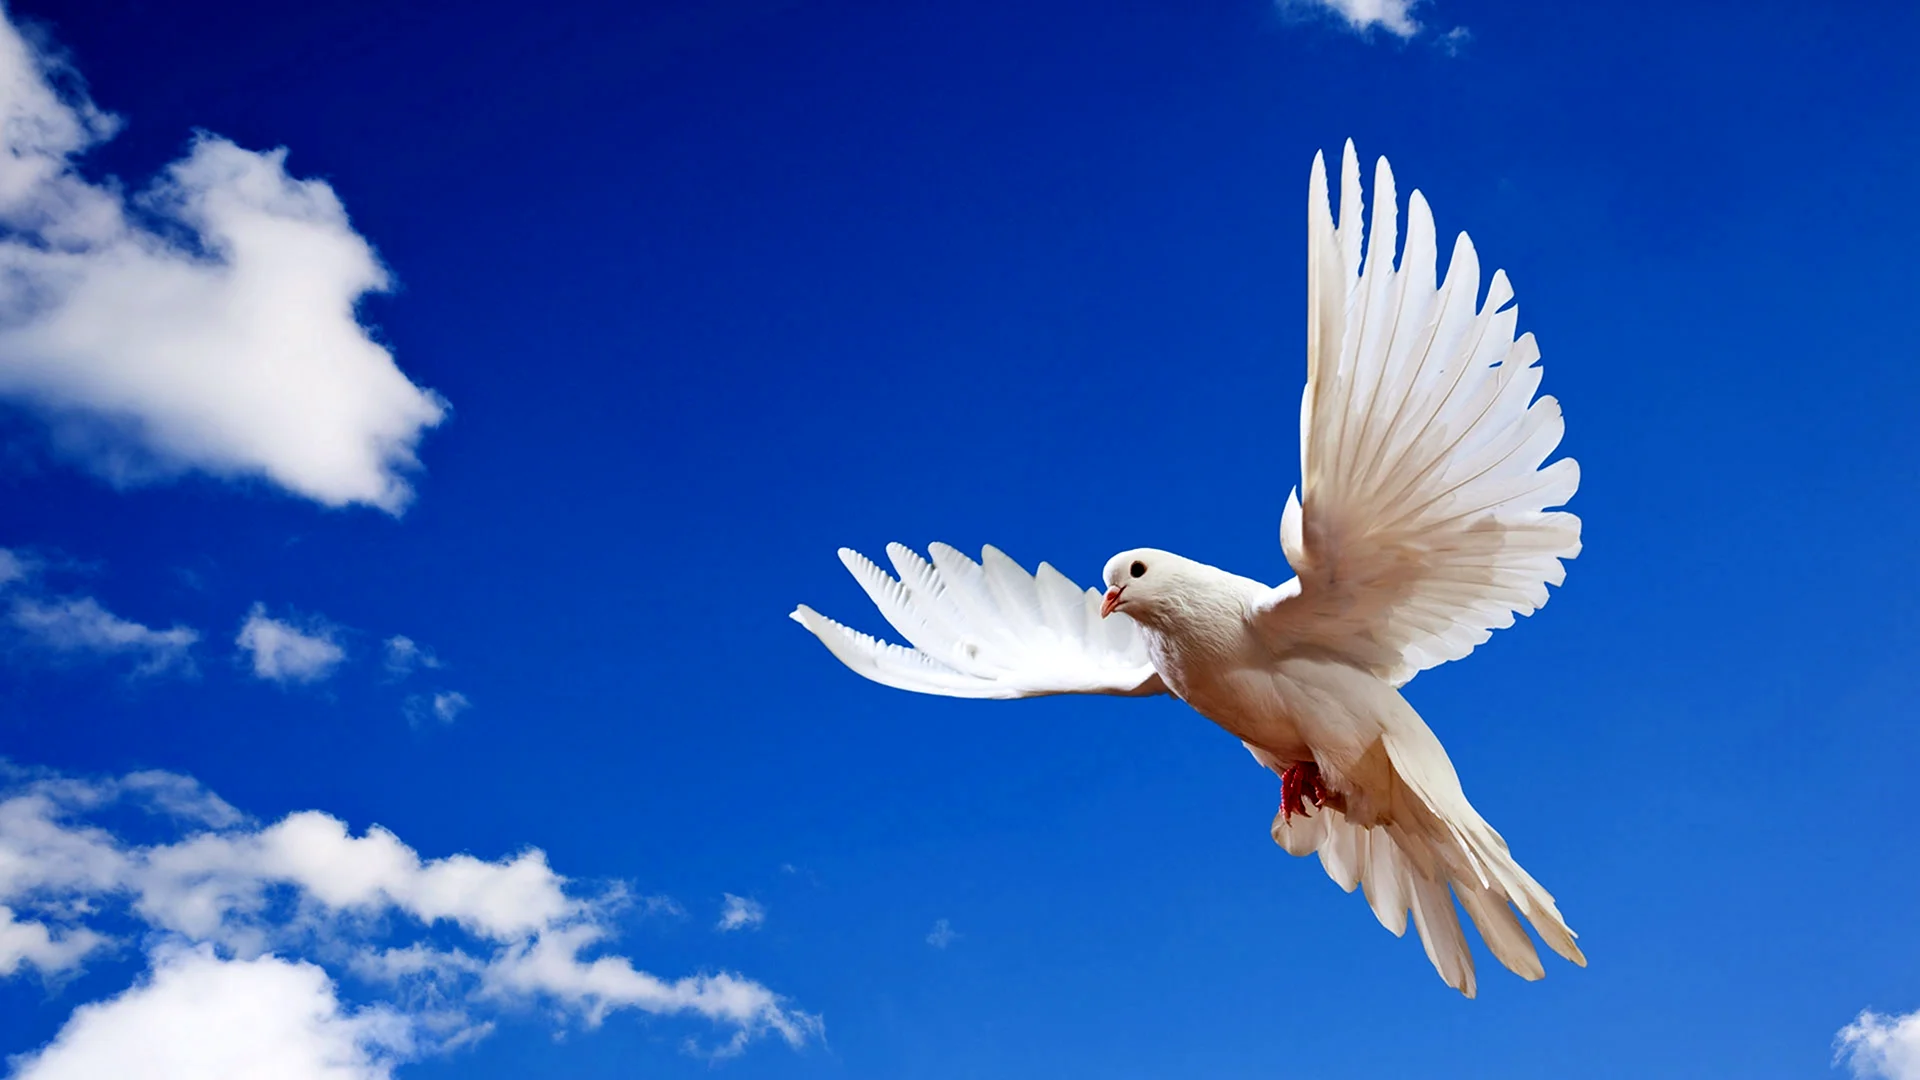 Небо с голубями ко Дню Победы